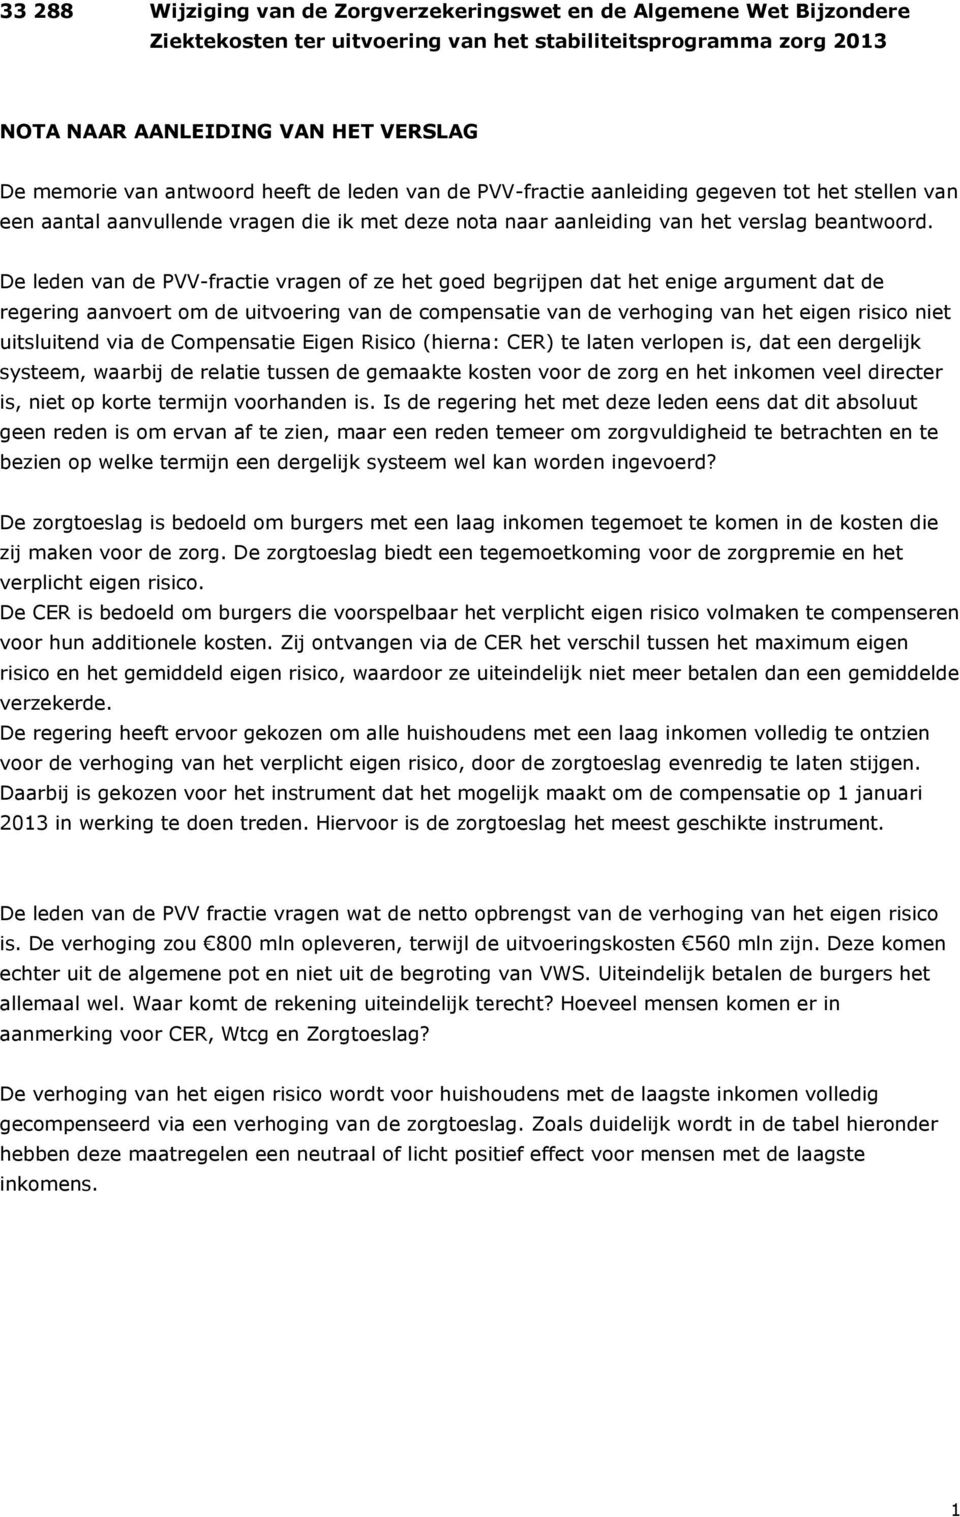 De leden van de PVV-fractie vragen of ze het goed begrijpen dat het enige argument dat de regering aanvoert om de uitvoering van de compensatie van de verhoging van het eigen risico niet uitsluitend